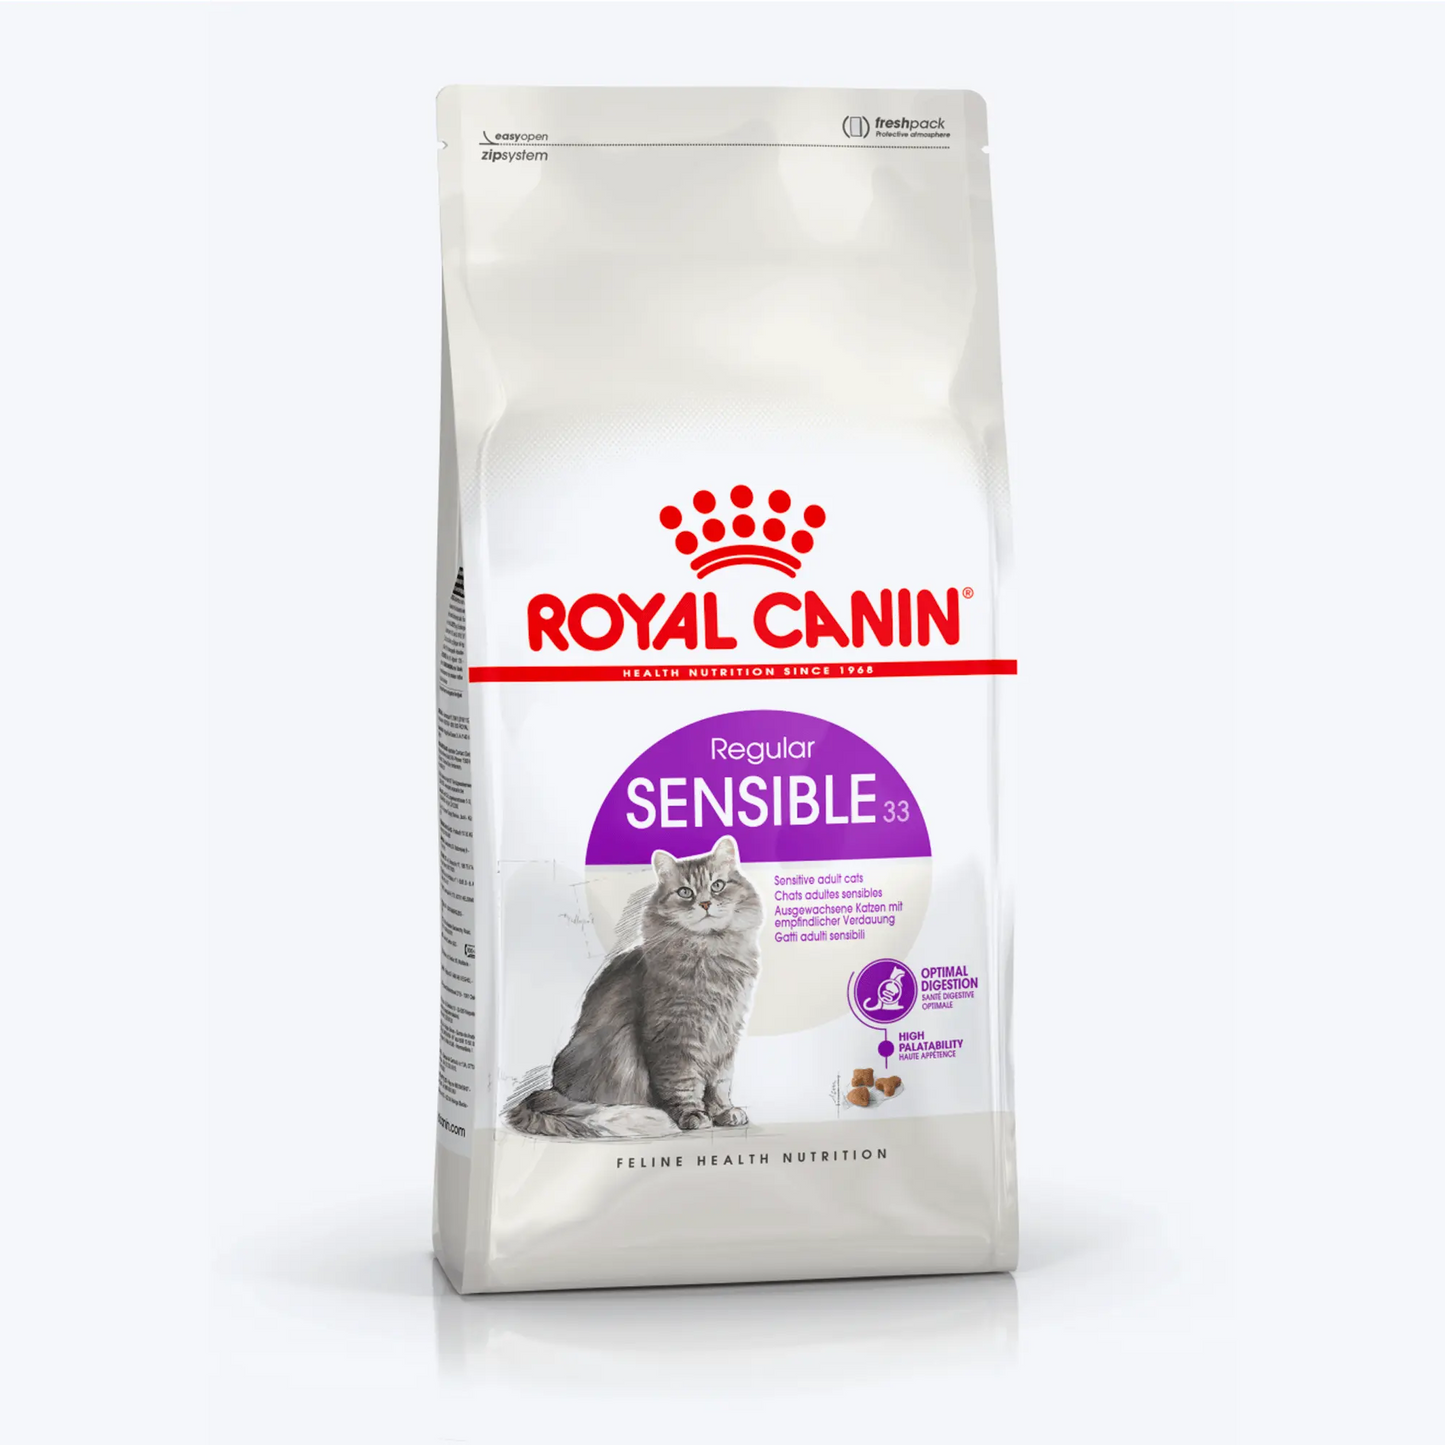 Royal Canin Sensible 33 Hassas Sindirim Sistemli Yetişkin Kedi Maması 2 Kg